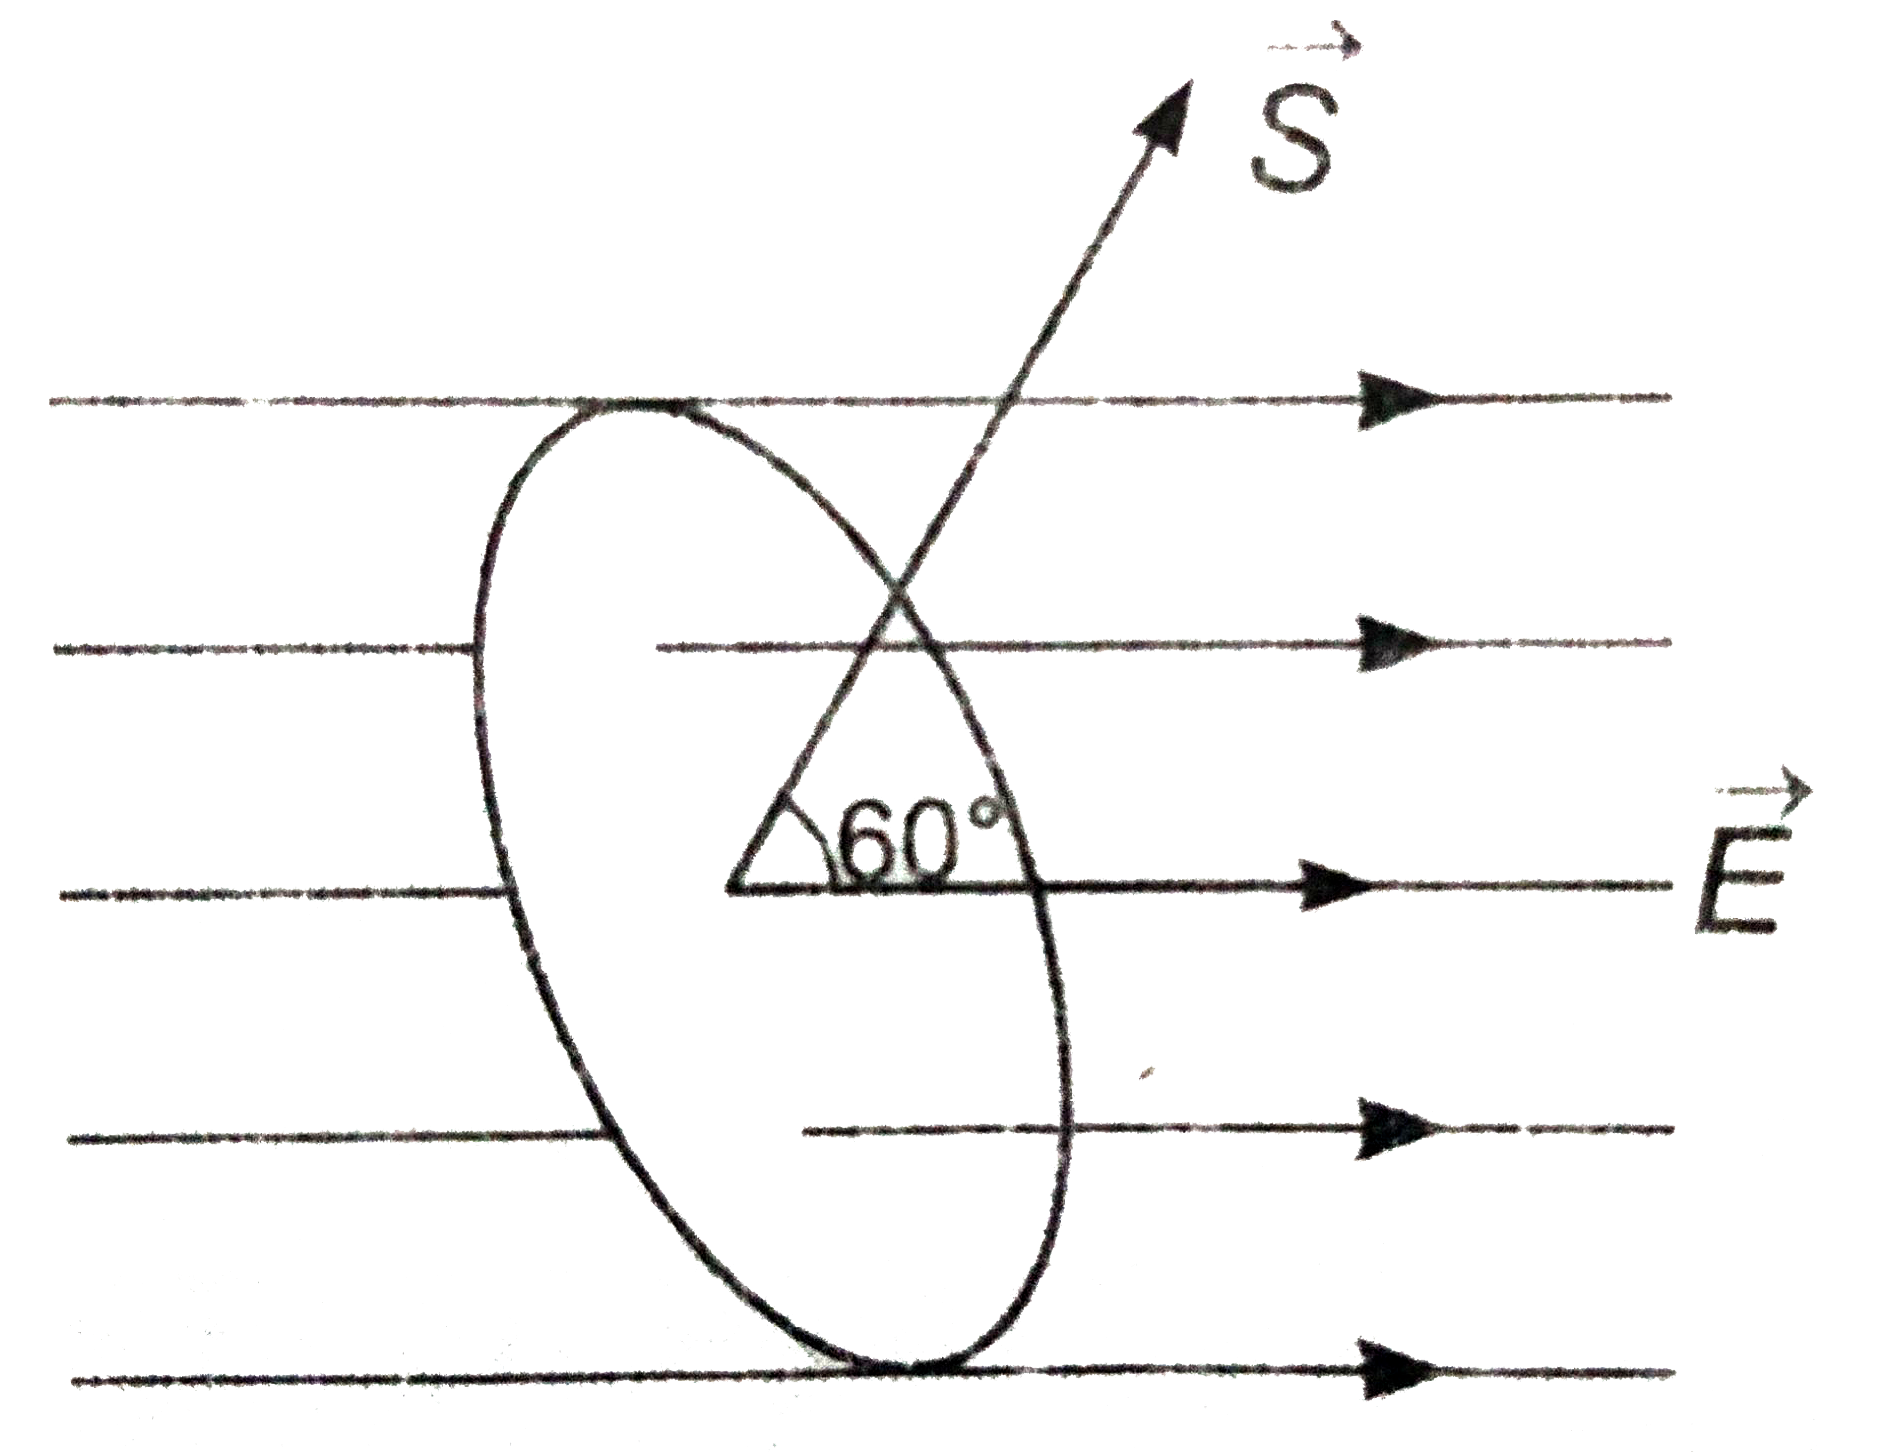 10 सेमि त्रिज्या की एक चक्ति 4xx10^(3) न्यूटन/कुलोम के एकसमान वैधुत क्षेत्र में एक प्रकार रखी है की क्षेत्रफल सदिश vecS, वैधुत क्षेत्र की दिशा से 60^(@) कोण बनाता है (चित्र)। चकती से सम्बन्ध फ्लक्स का मान ज्ञात कीजिए।